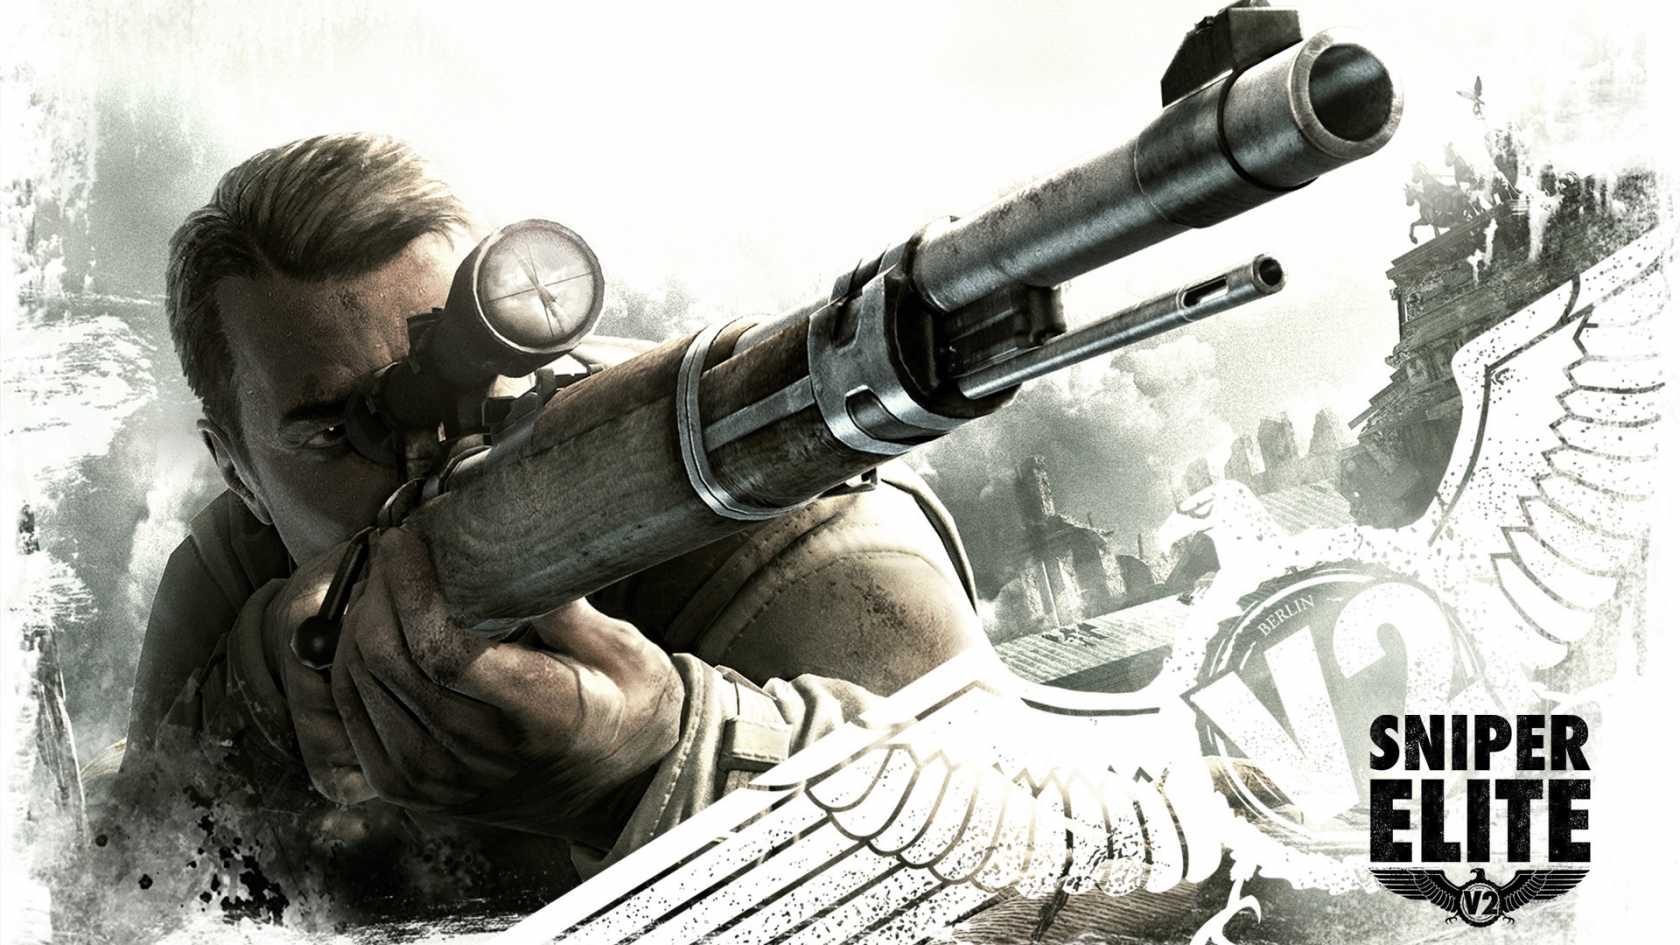 Sniper Elite 2 for 1680 x 945 HDTV resolution